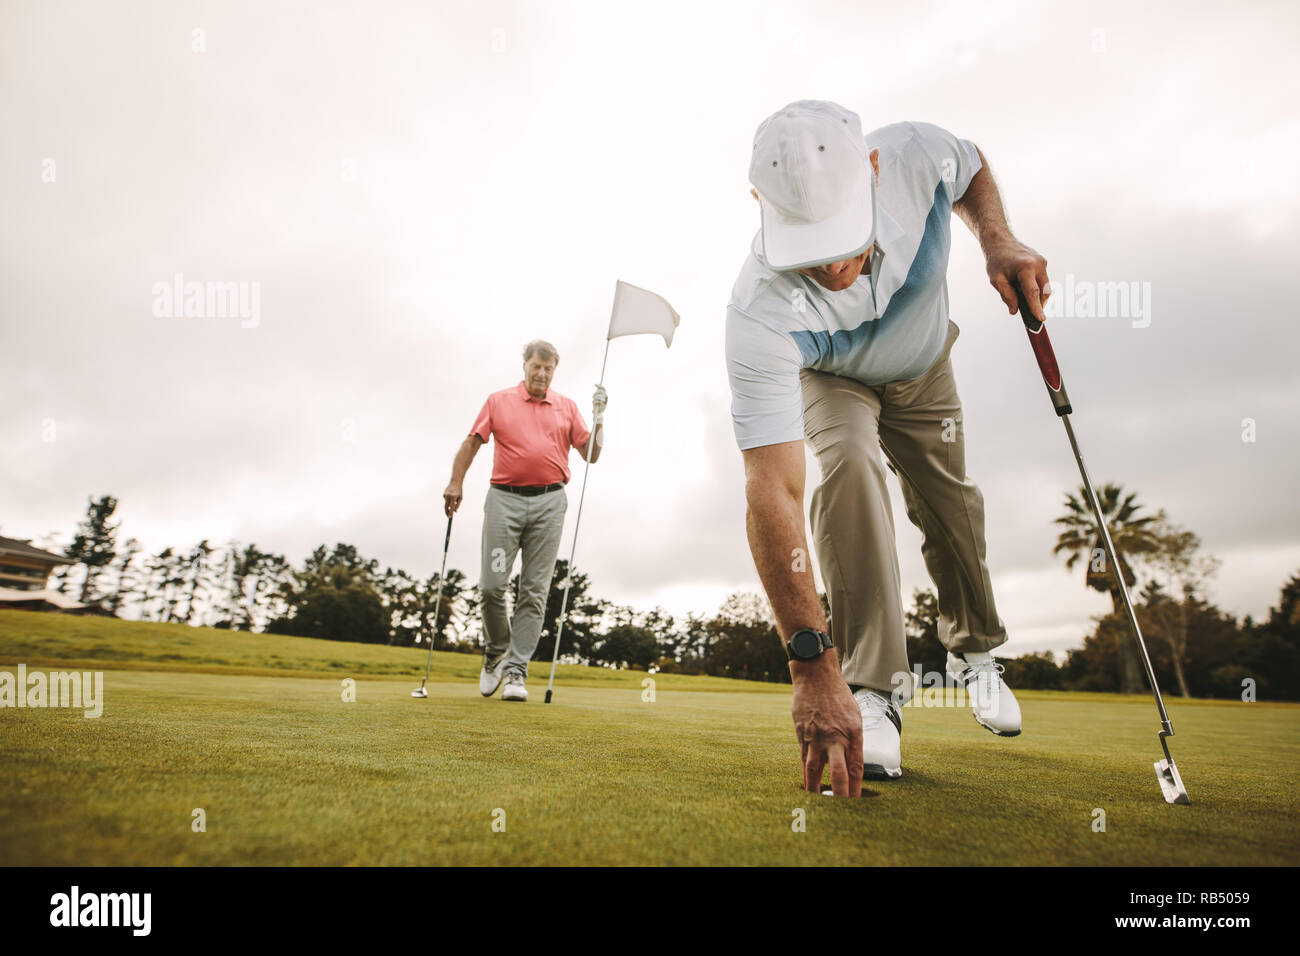 Ältere Golf player Kommissionierung Golf Ball aus der Bohrung mit einem zweiten Spieler im Hintergrund halten die Flagge. Ältere Golf Spieler ein Spiel spielen auf dem Golfplatz Stockfoto